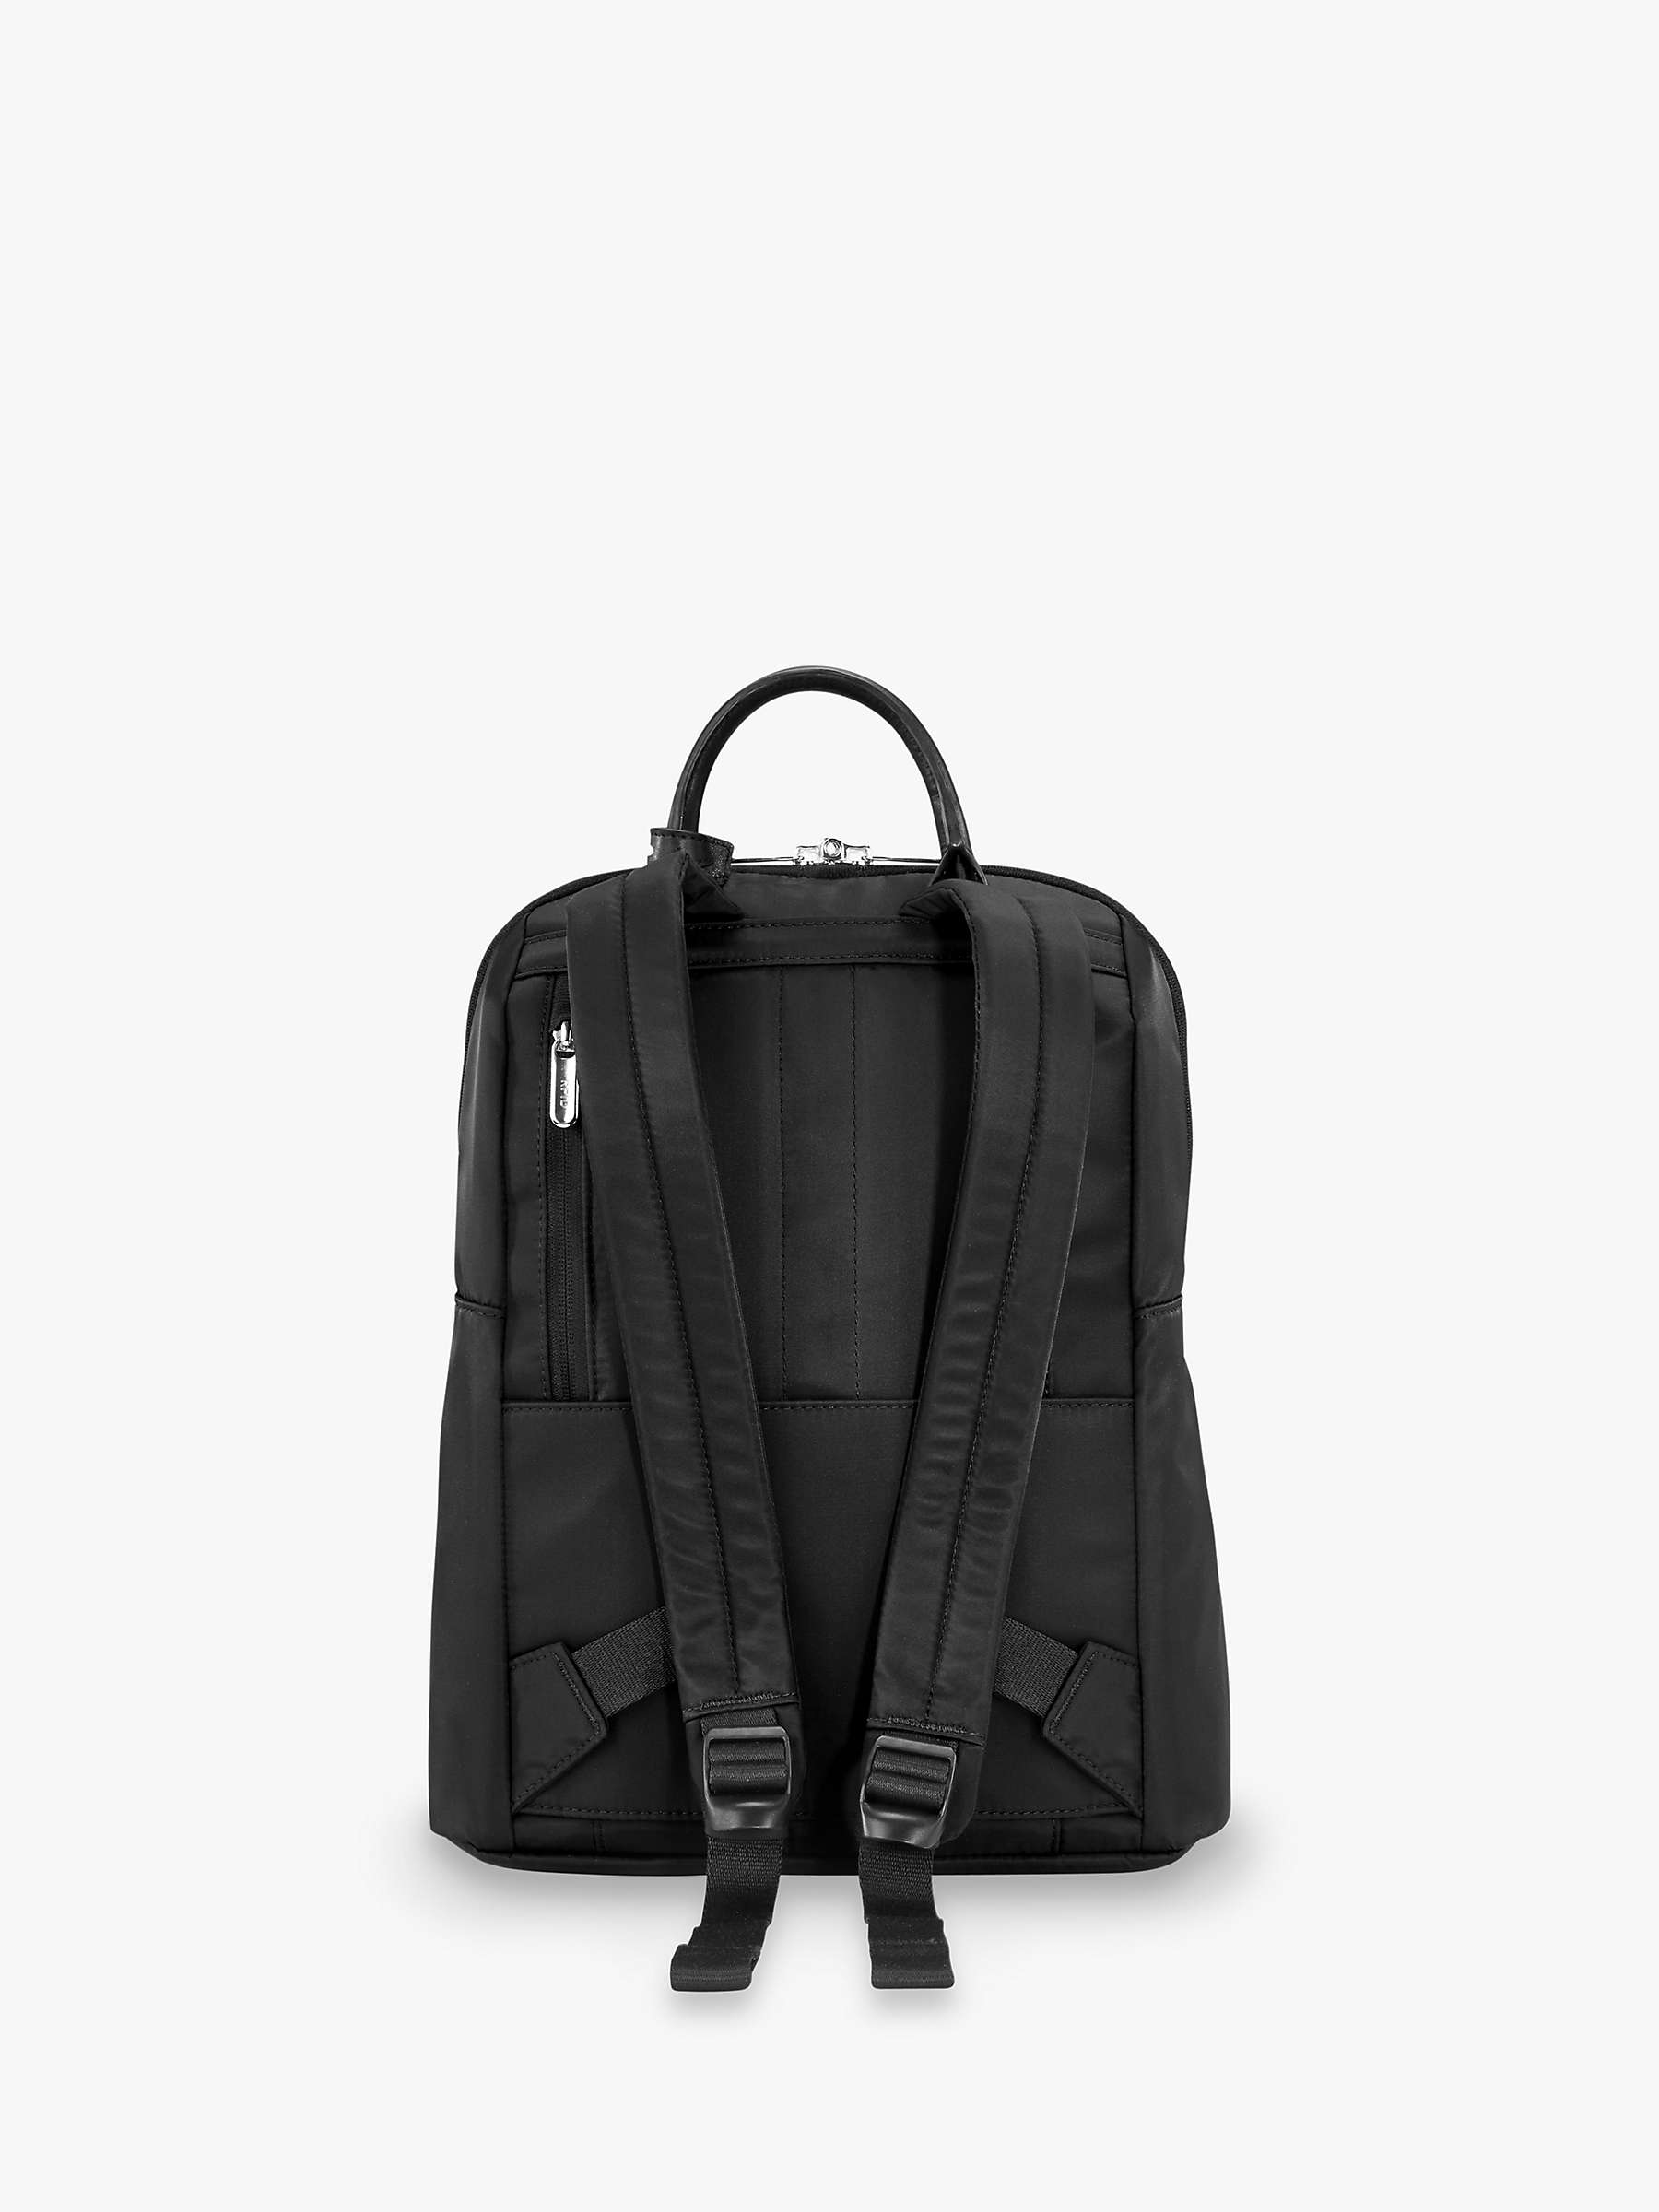 Briggs & Riley Rhapsody Slim Backpack, Black at John Lewis & Partners